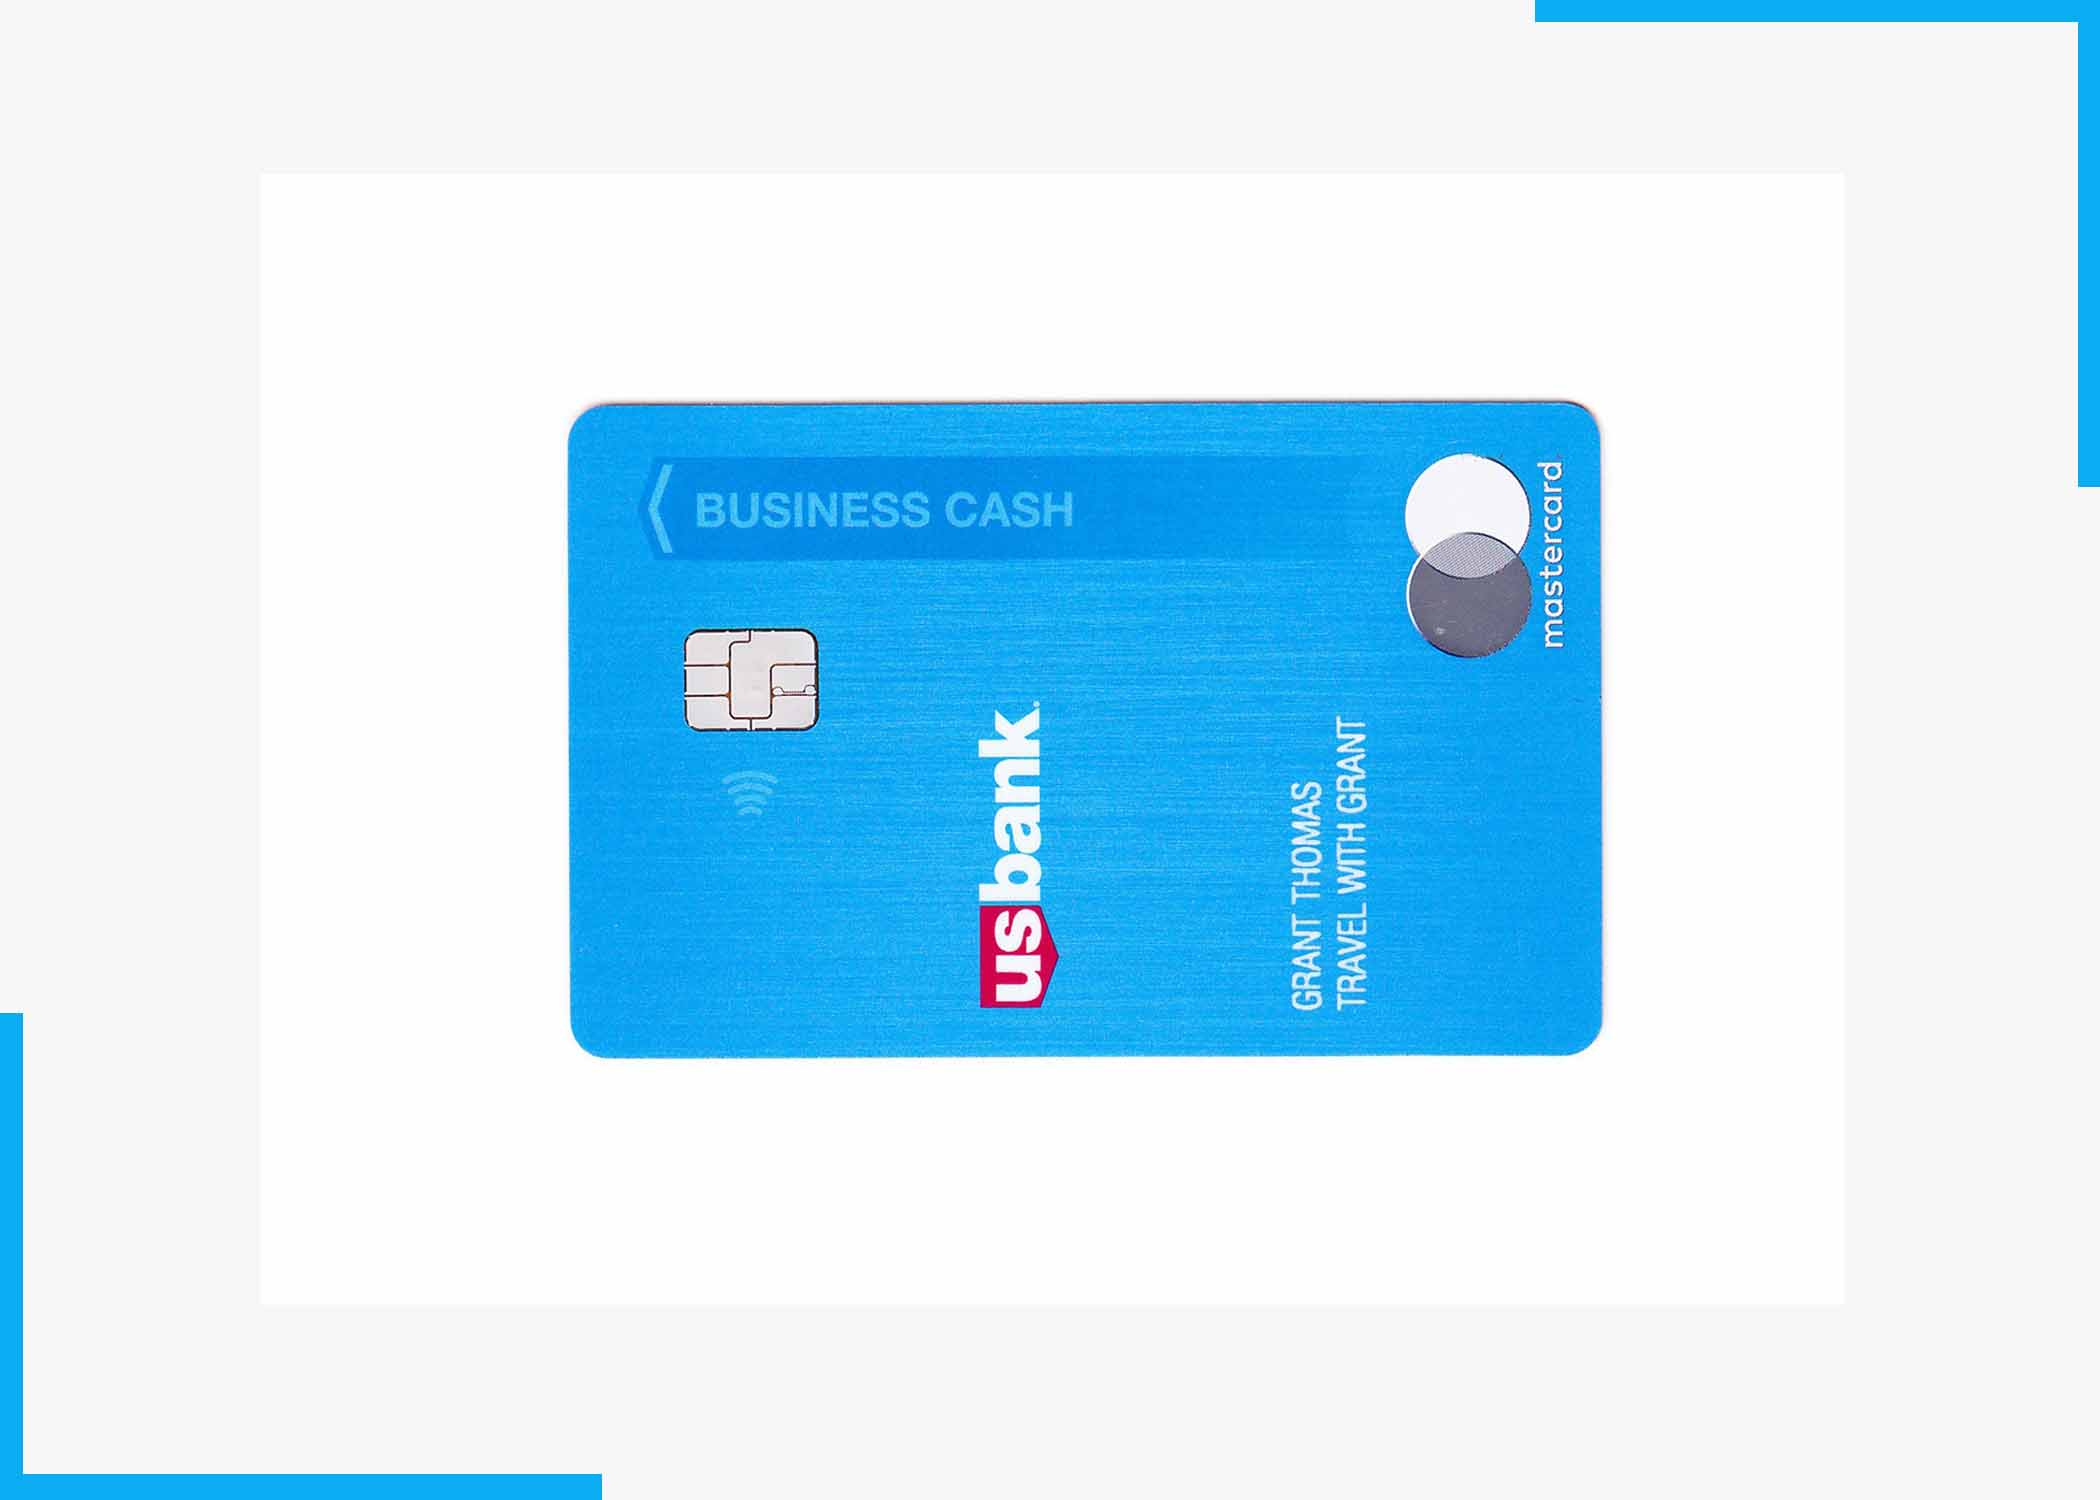 US Bank Triple Cash Business Card